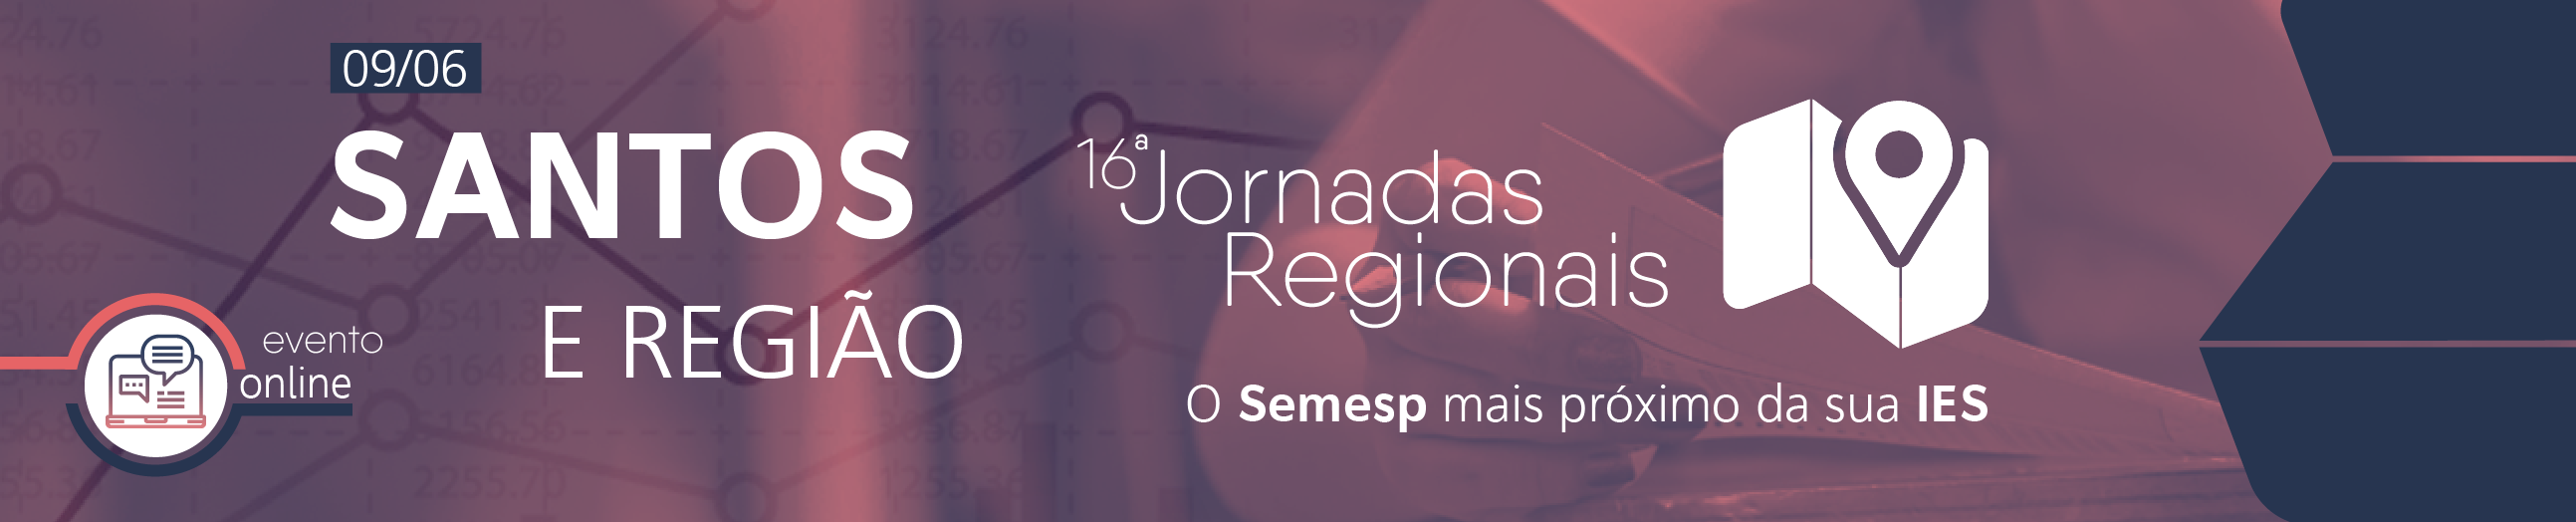 Jornadas Regionais | 16ª Edição - Santos